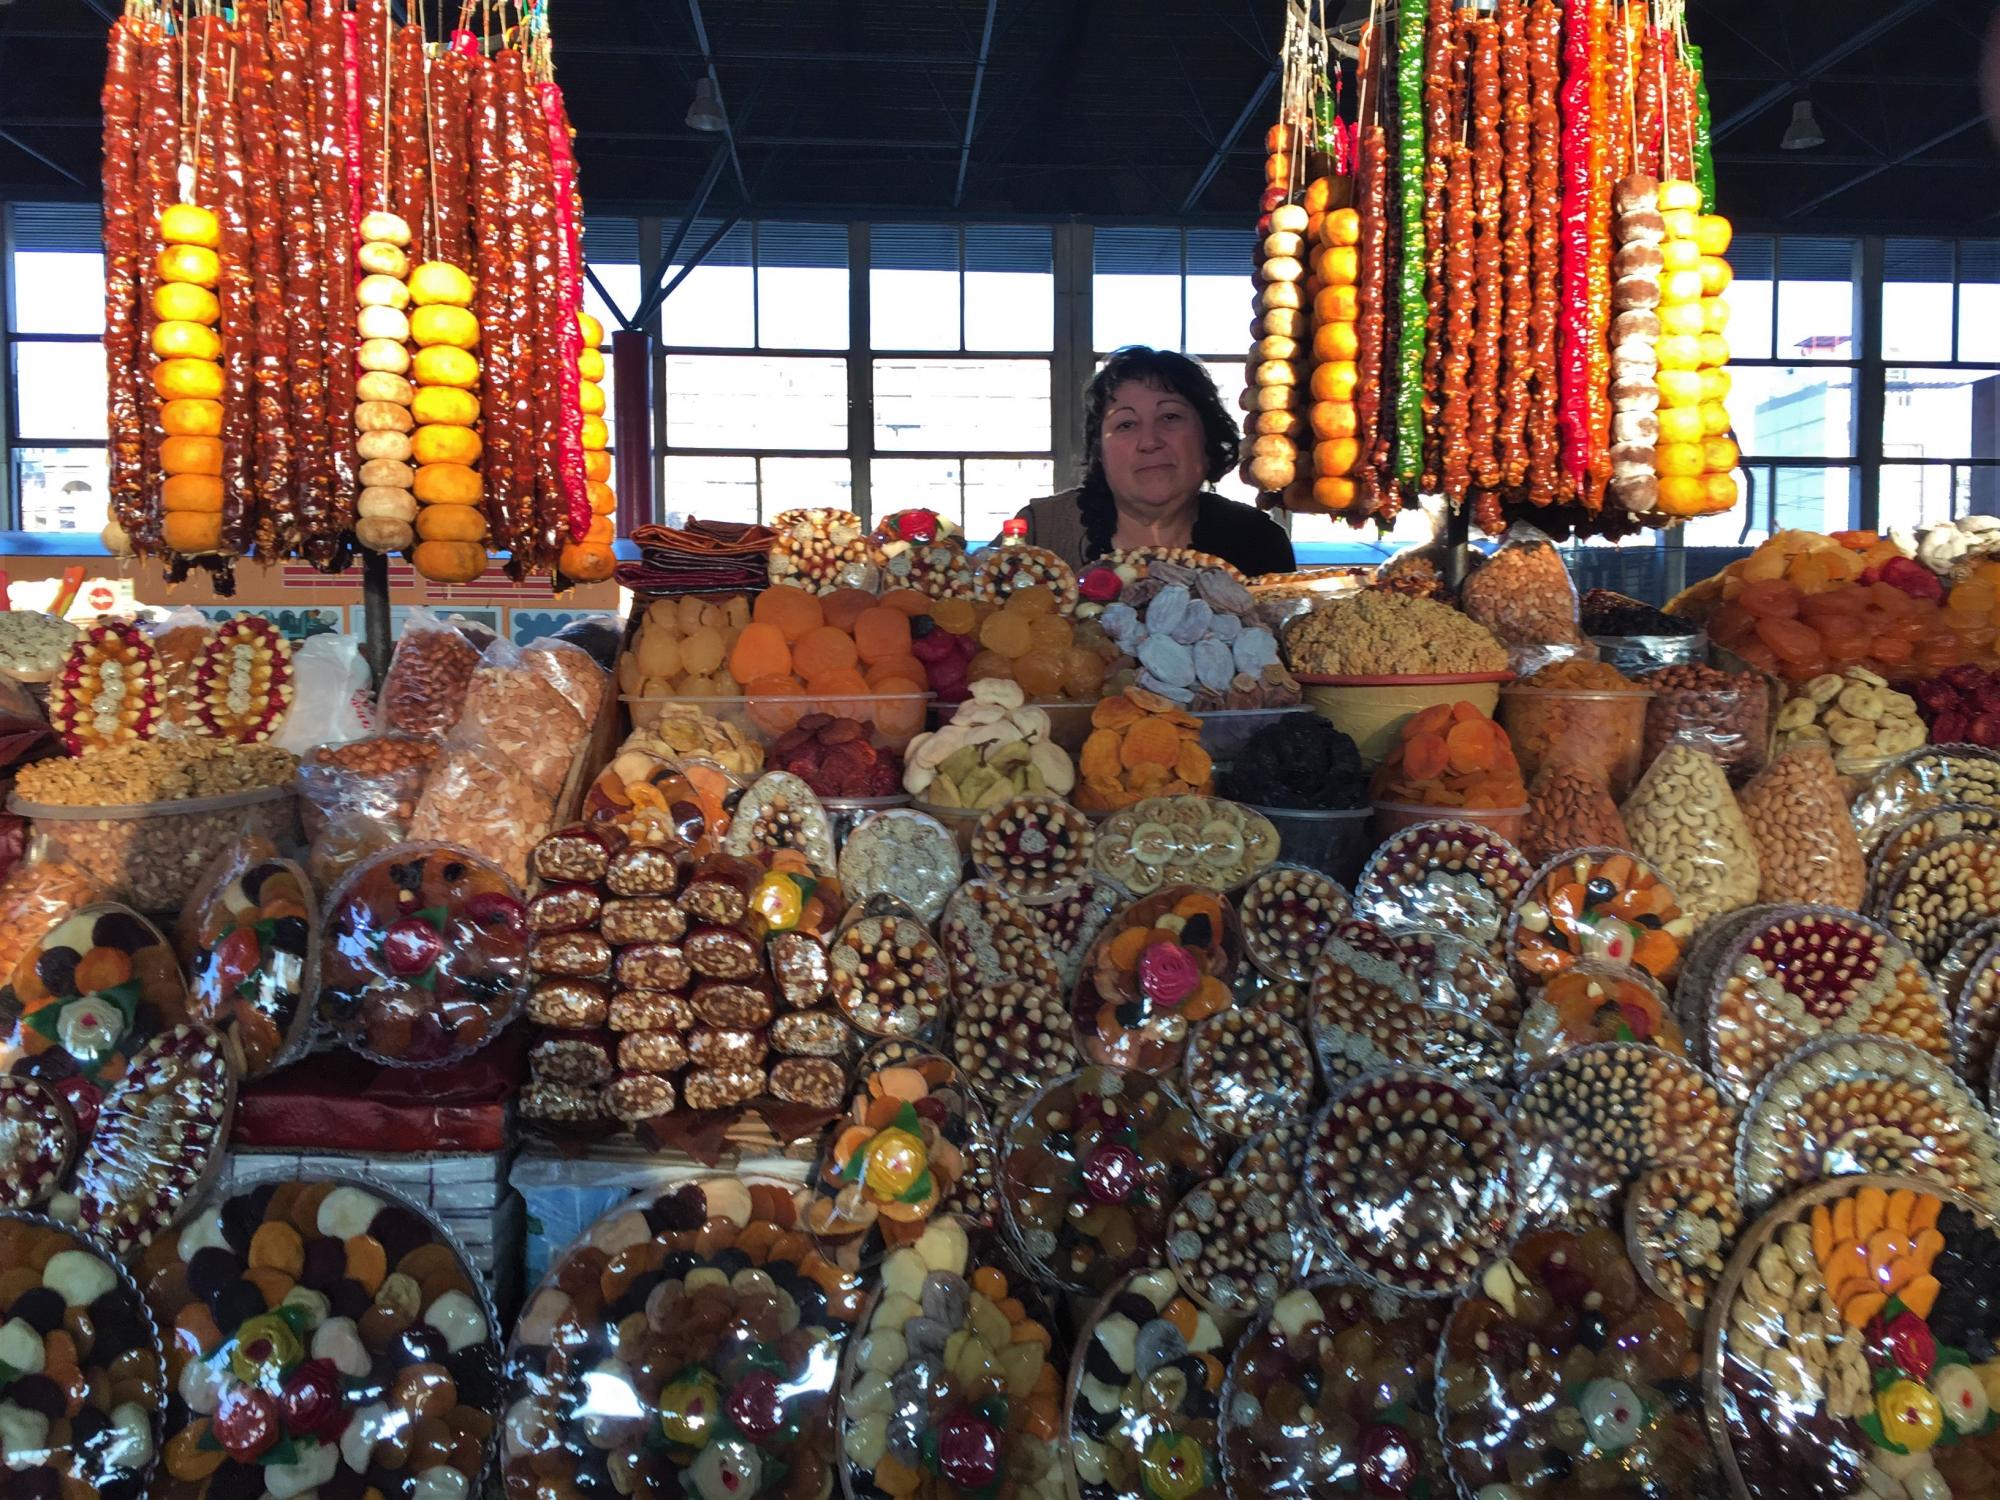 Photostory: Bushels of Hope in Yerevan’s GUM Market